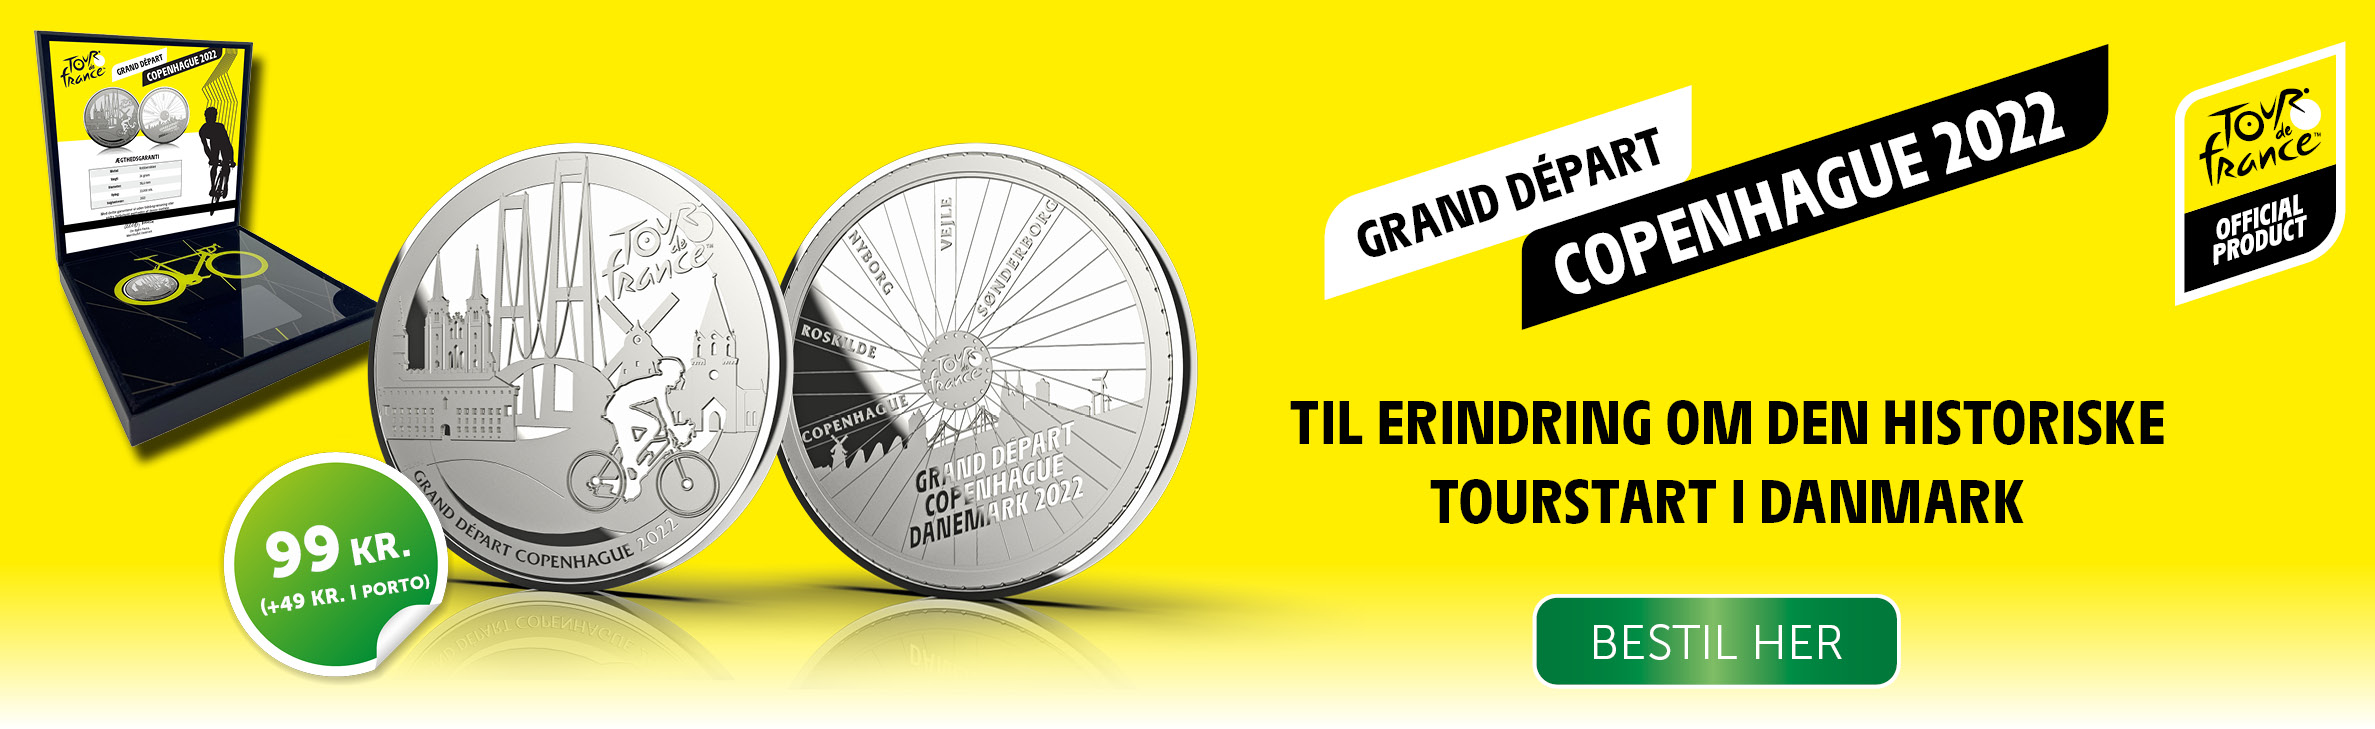 Tour de France Grand Depart Copenhague 2022